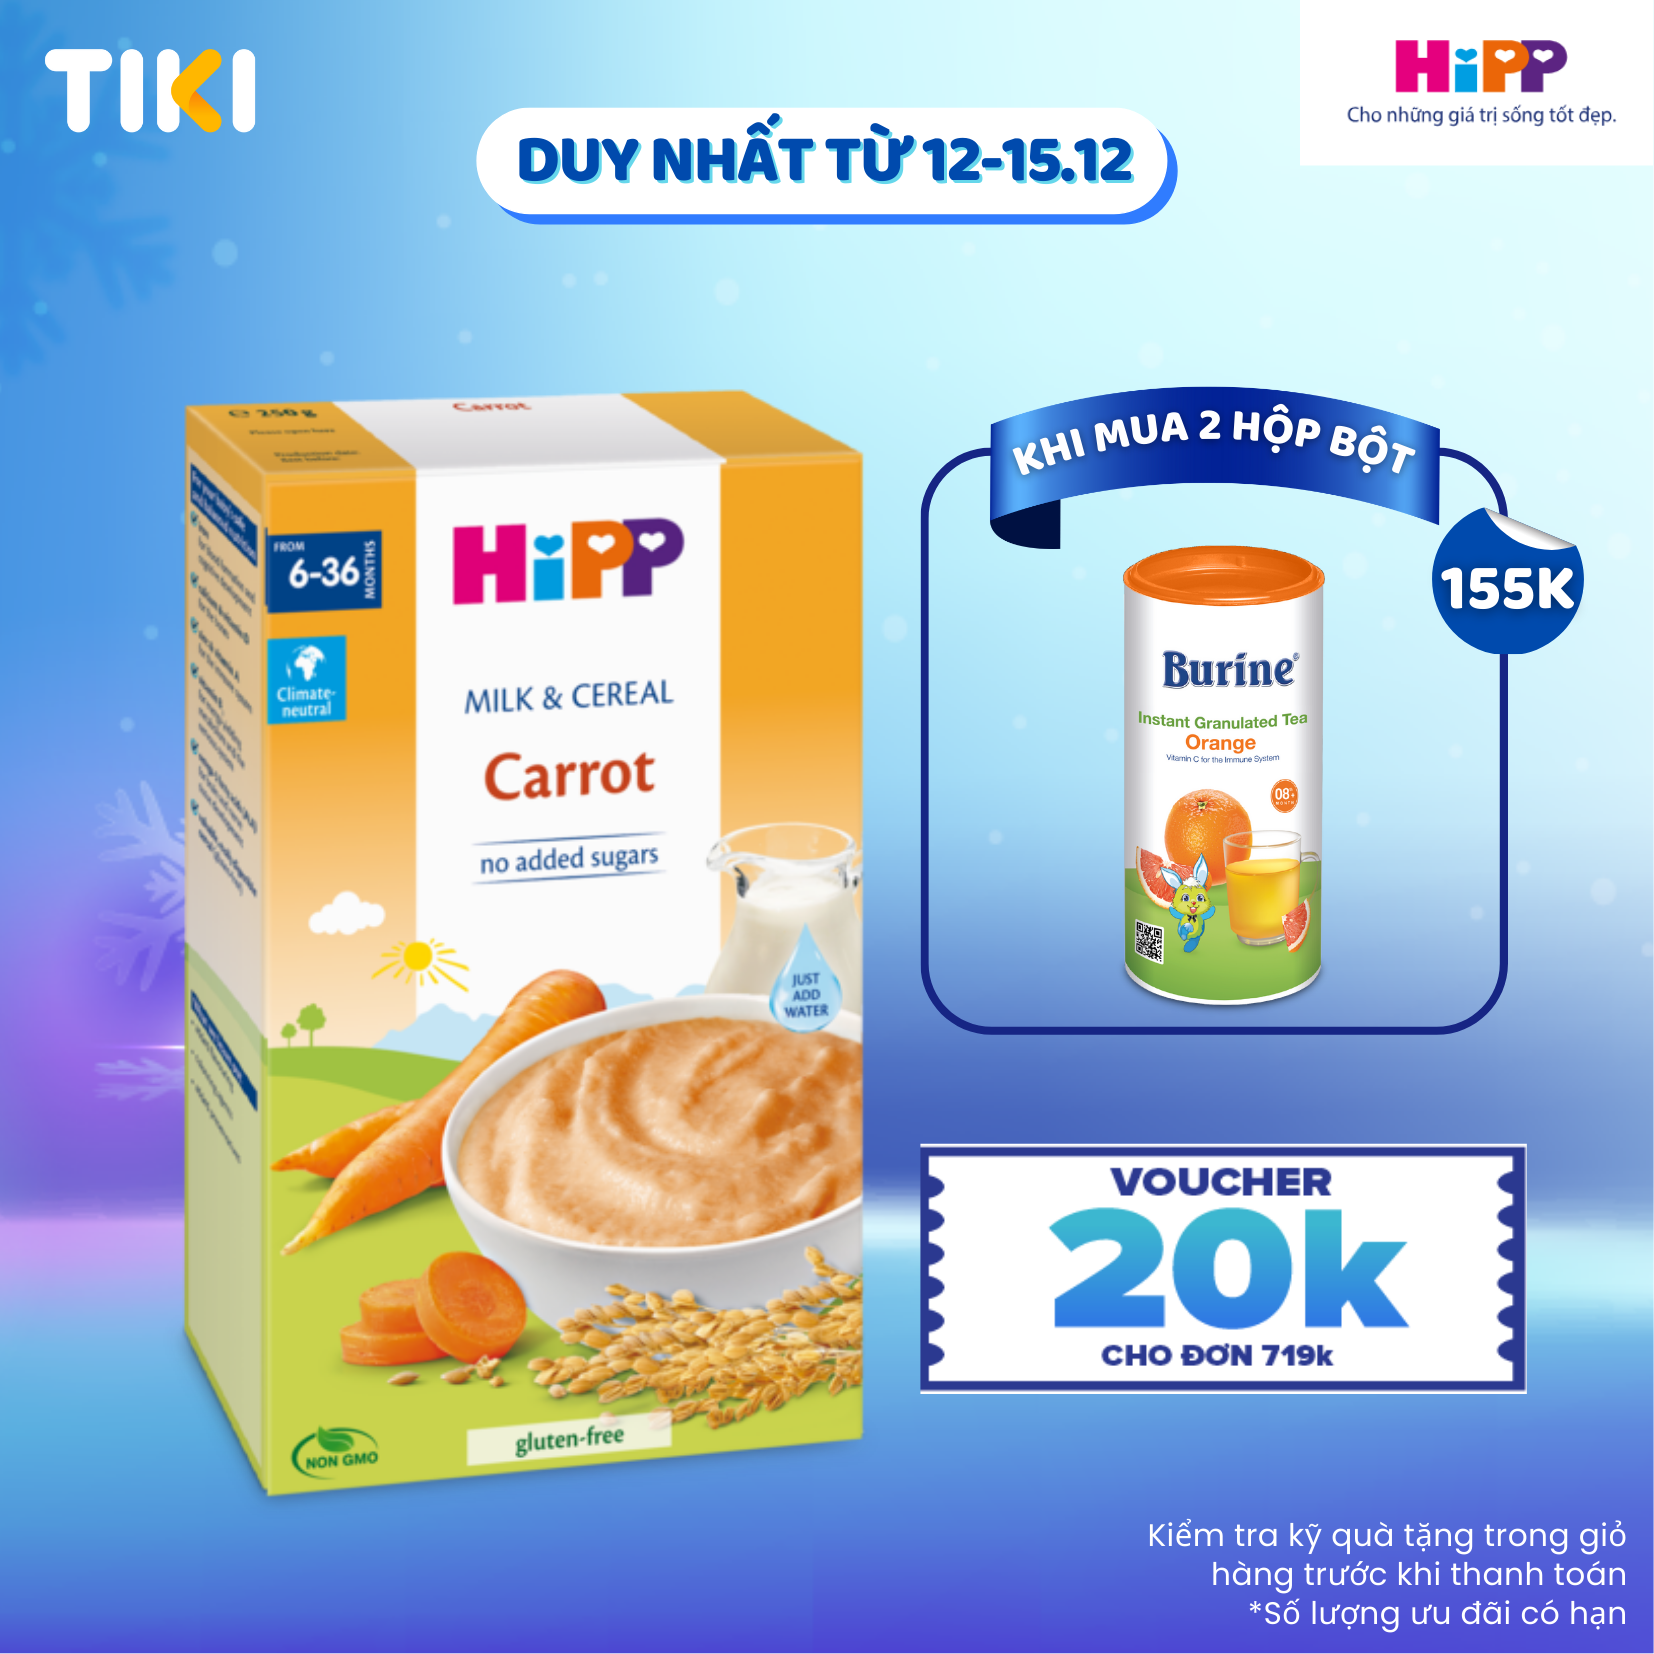 Bột ăn dặm dinh dưỡng Sữa, Ngũ cốc & rau củ - Cà rốt HiPP Organic 250g